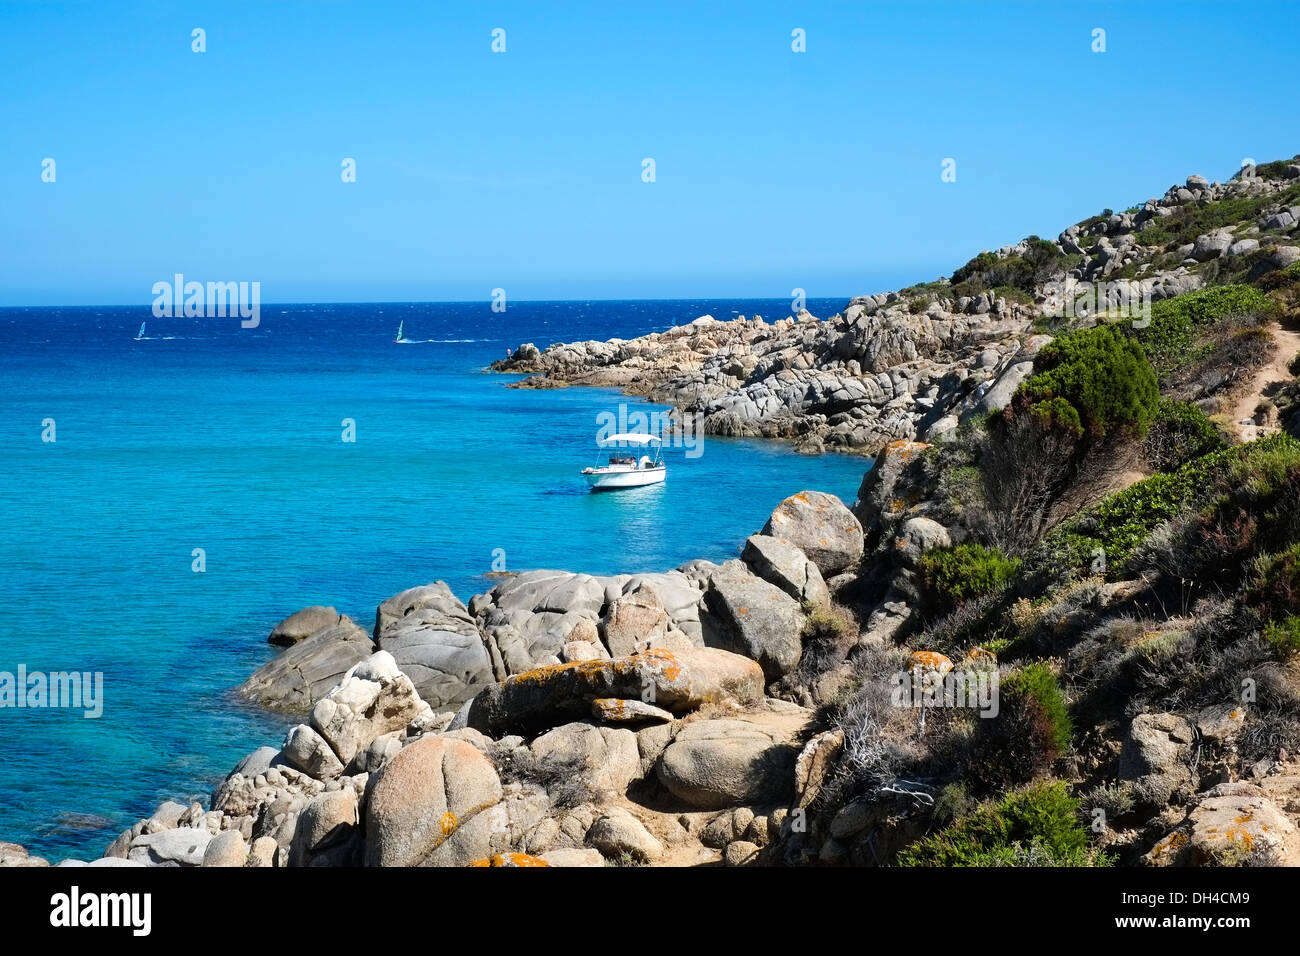 Imbarcazione in una baia con il mare blu di Chia, Sardegna, Italia Foto Stock